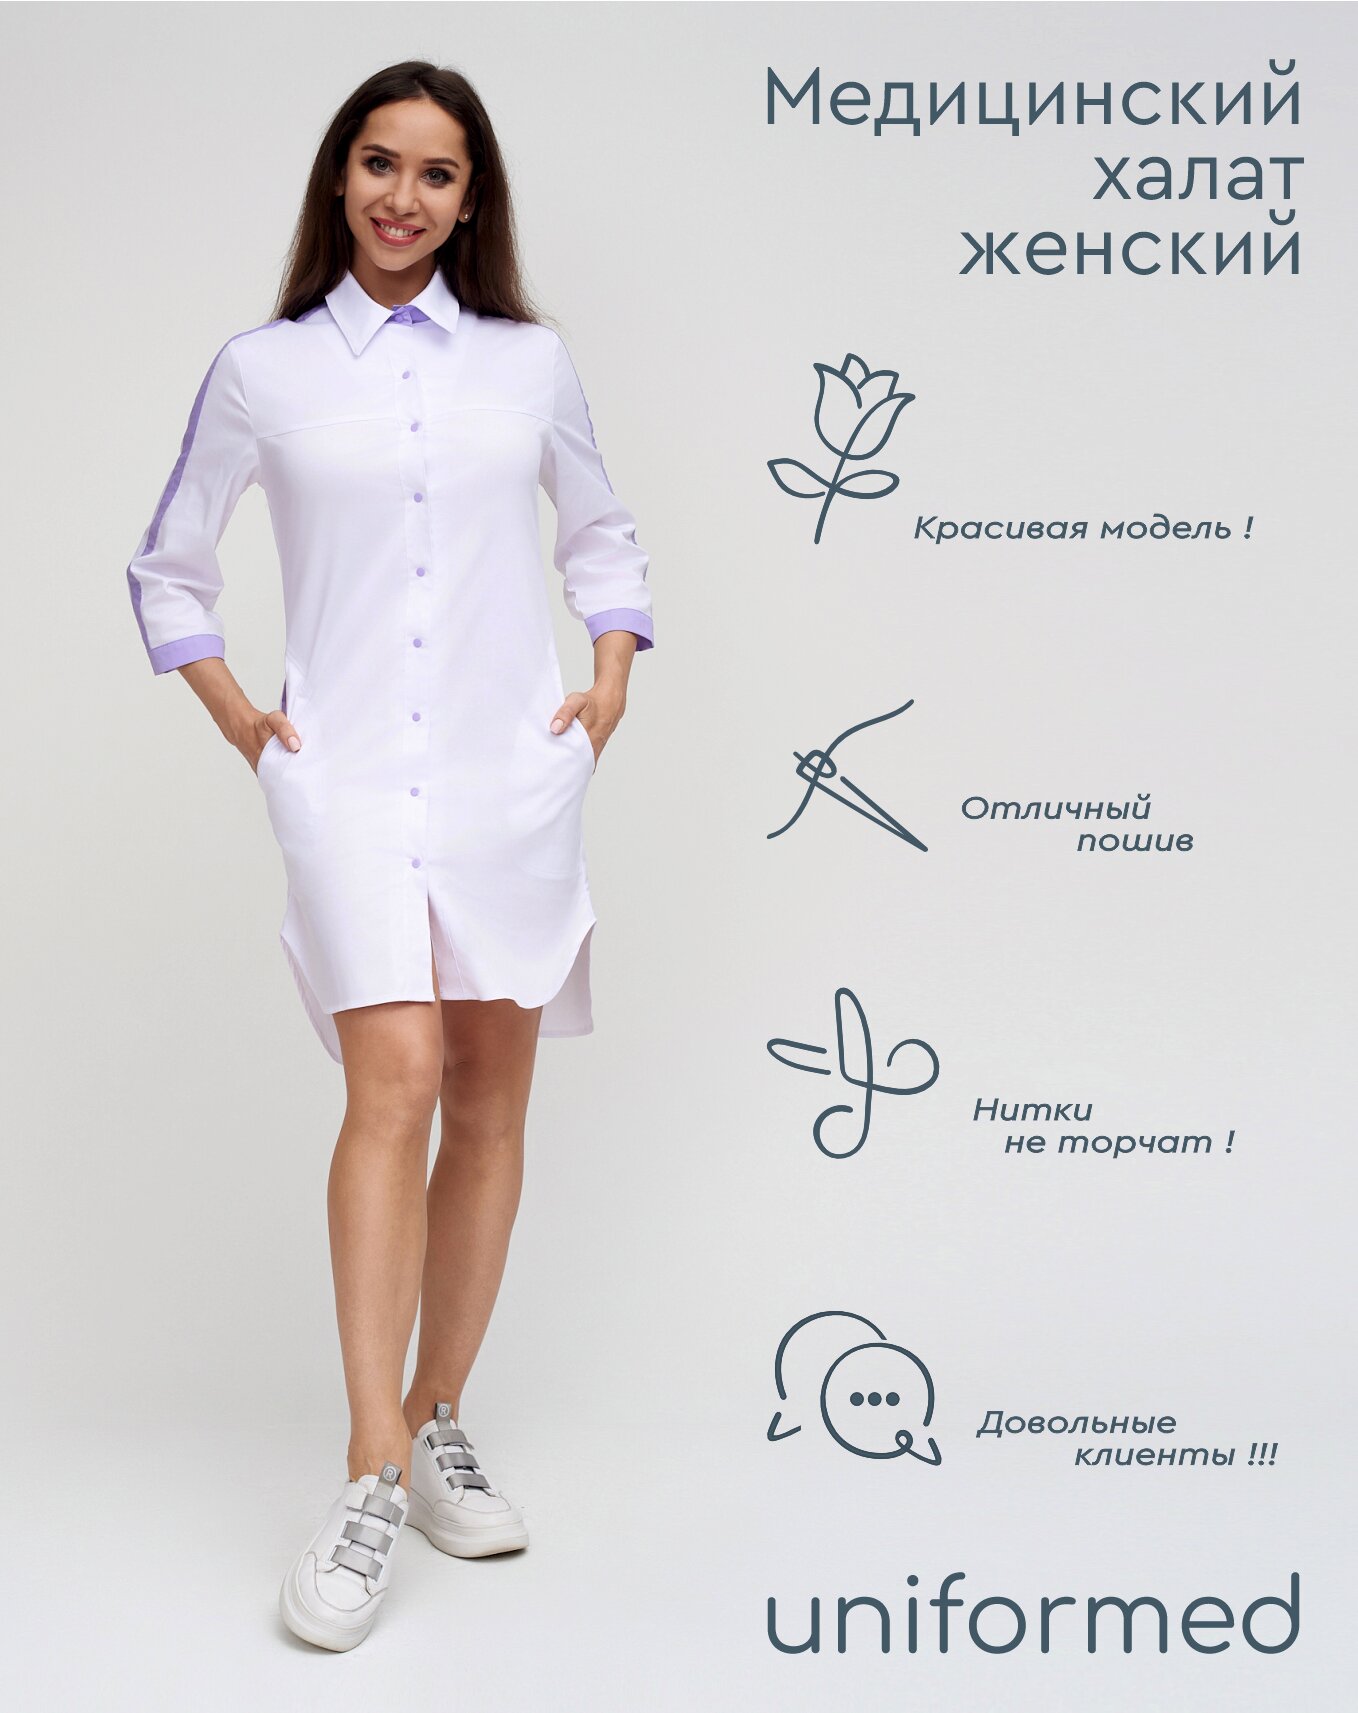 Медицинский женский халат 370.4.2 Uniformed, ткань сатори стрейч, укороченный, рукав 3/4, на кнопках, цвет белый, отделка сиреневая, рост 170-176, размер 52